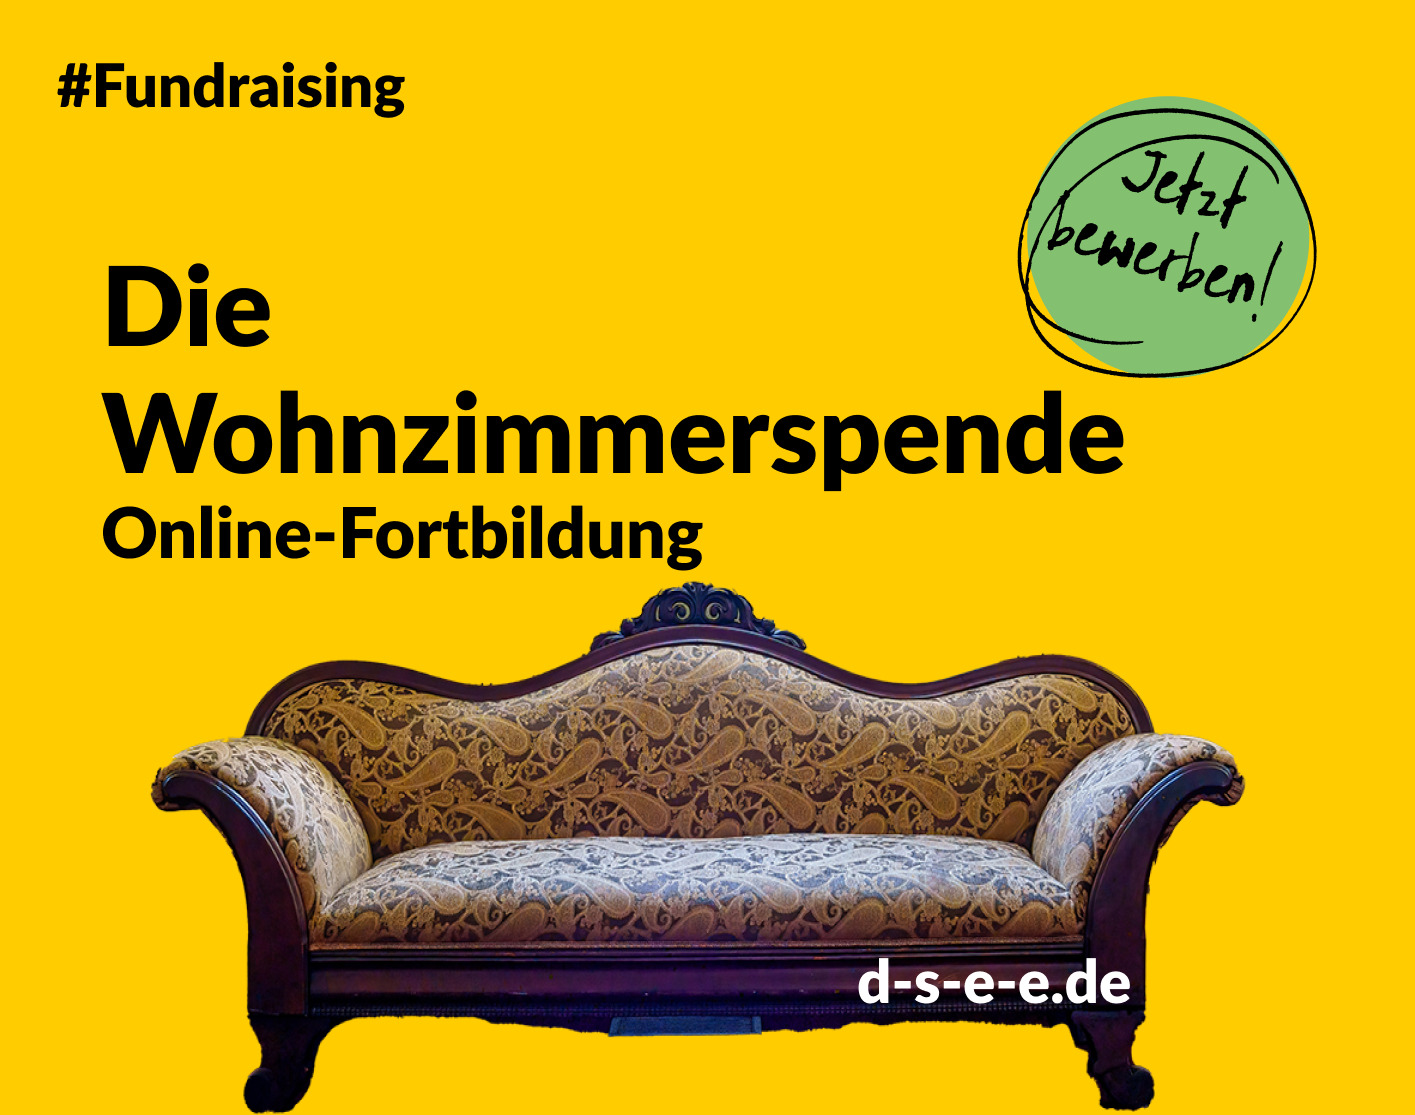 Grafik mit einem Sofa und dem Text: #Fundraising. Die Wohnzimmerspende. Online-Fortbildung. Jetzt bewerben! d-s-e-e.de